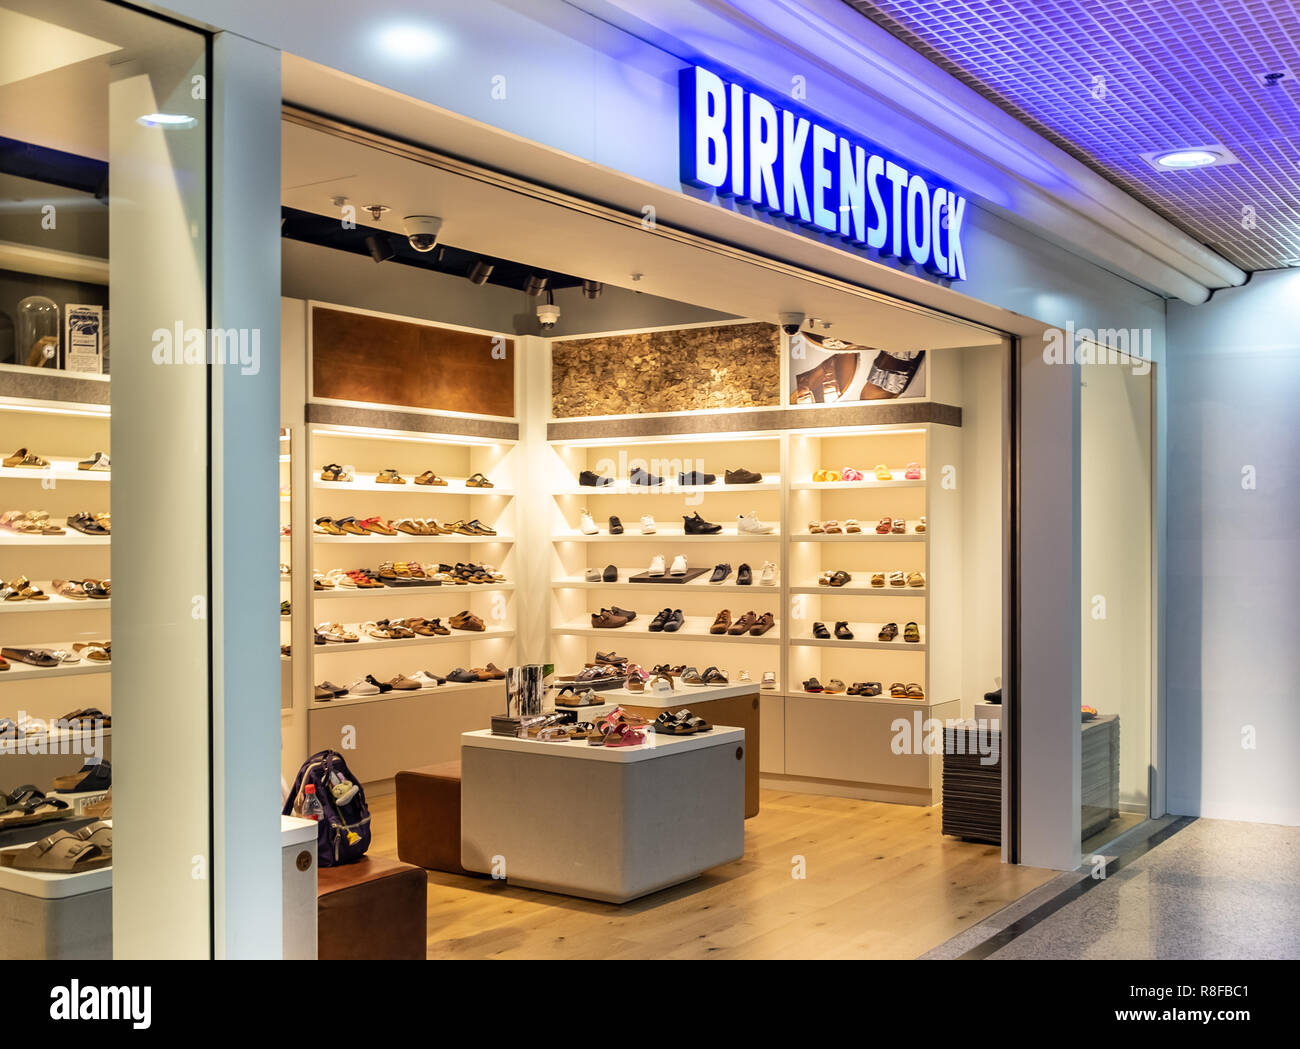 birkenstock hk store